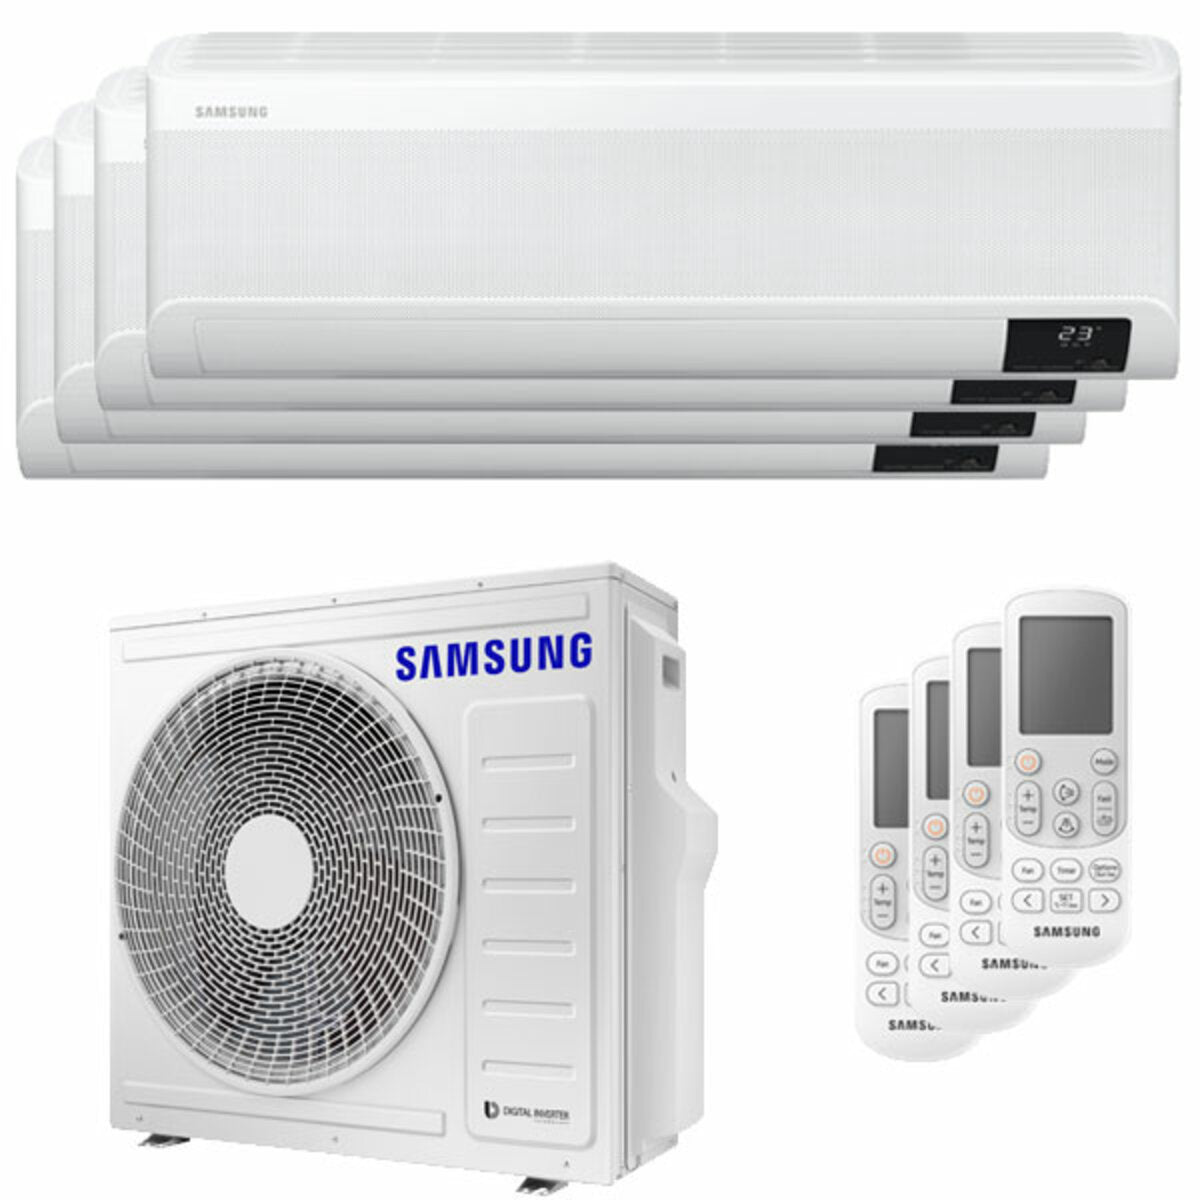 Samsung windfreie Klimaanlage Avant Quadri Split 9000 + 9000 + 9000 + 9000 BTU Inverter A++ WLAN Außengerät 8,0 kW